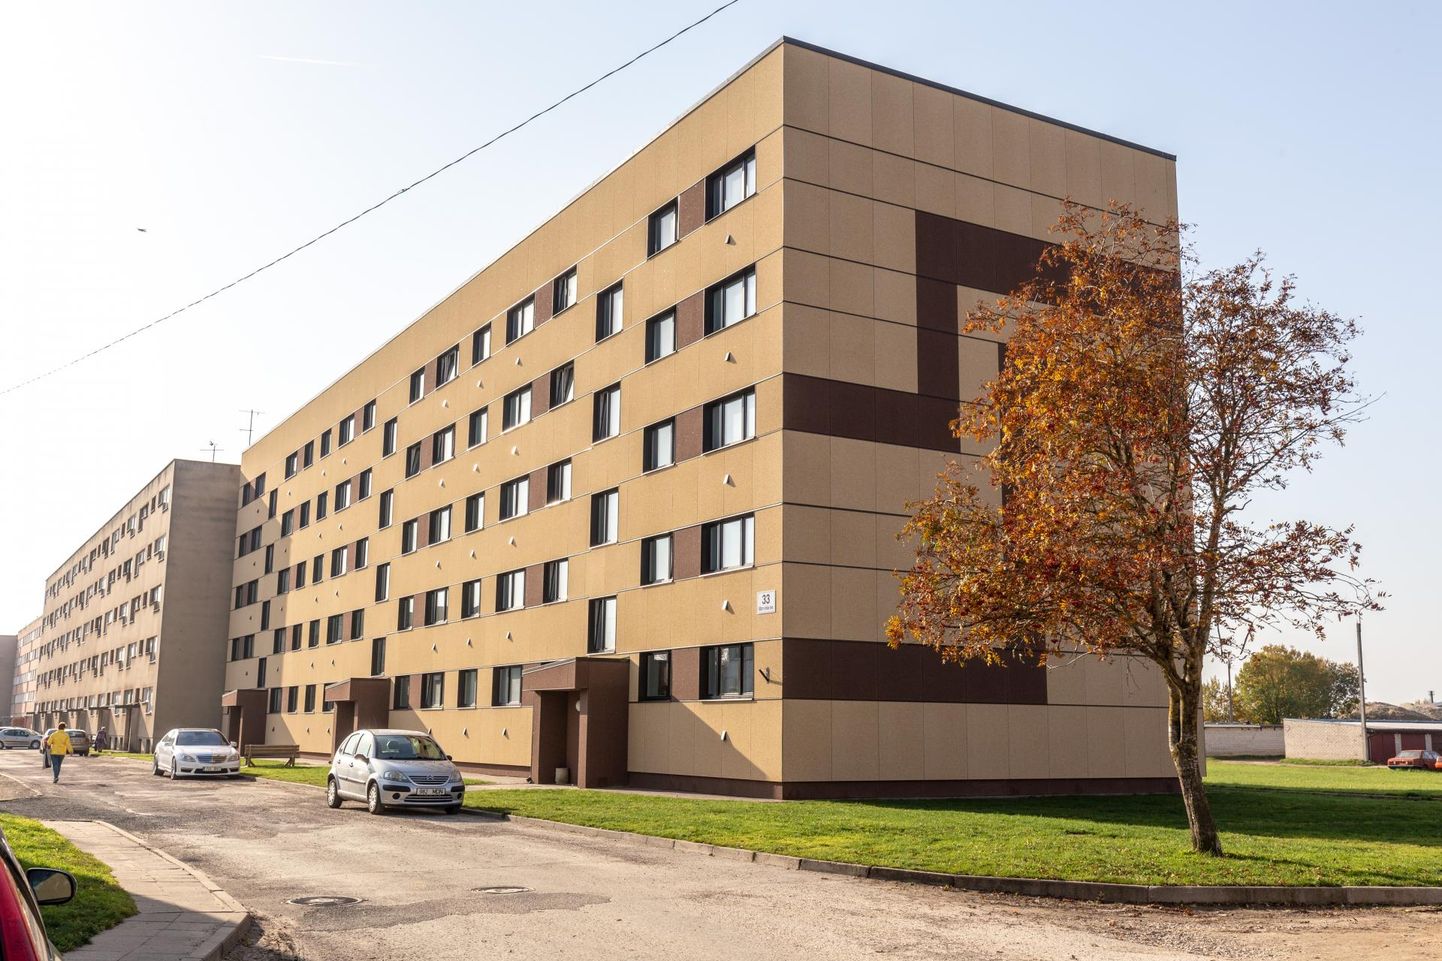 «Värvid linna 2018» tunnustuse pälvinud kortermaja Viljandis Männimäe teel